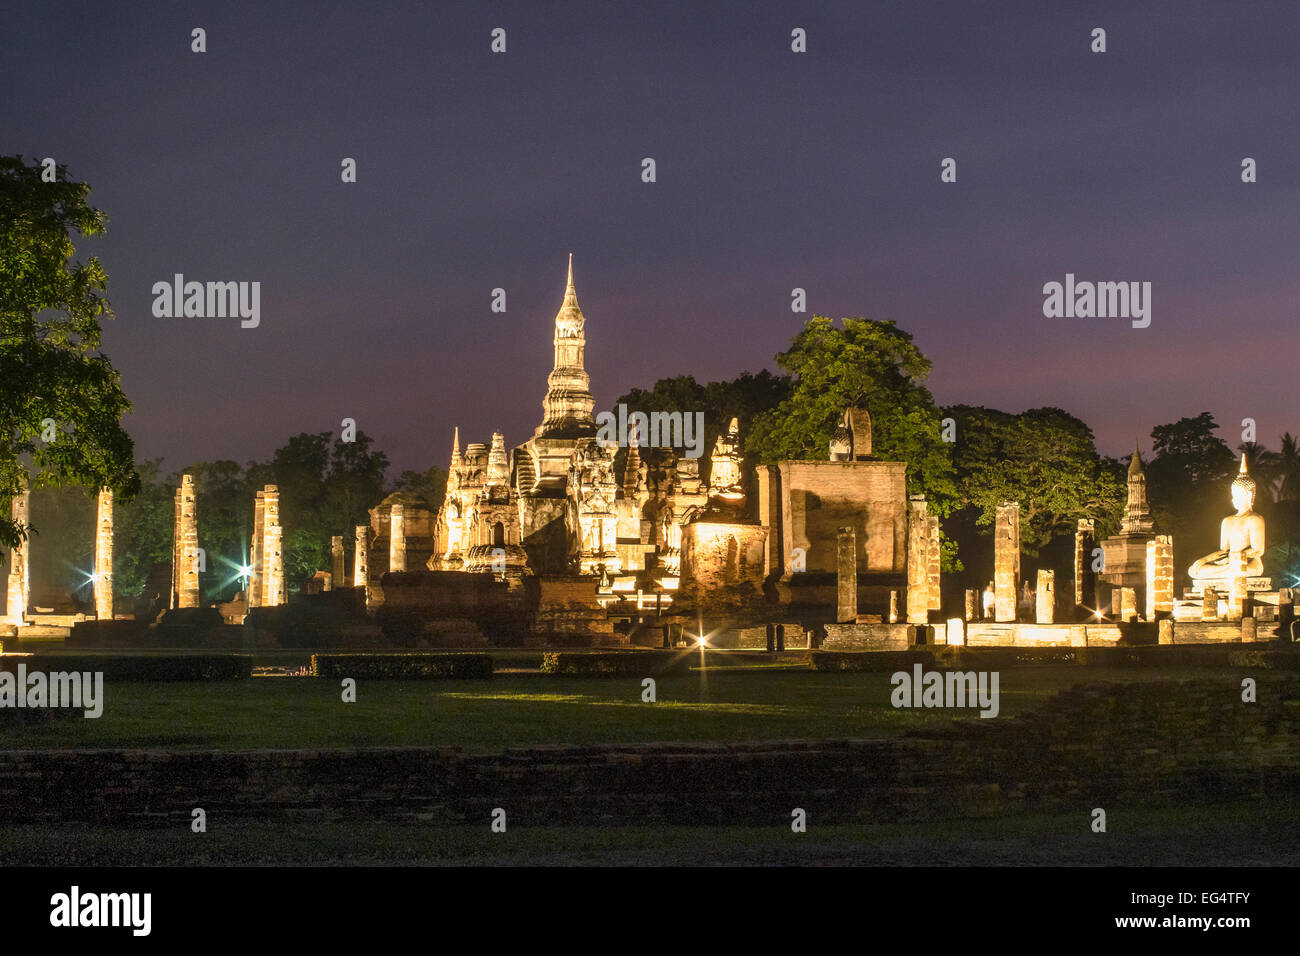 L'Asie. La Thaïlande, l'ancienne capitale du Siam. Parc archéologique de Sukhothai, classé au Patrimoine Mondial de l'UNESCO. Wat Mahathat par nuit. Banque D'Images